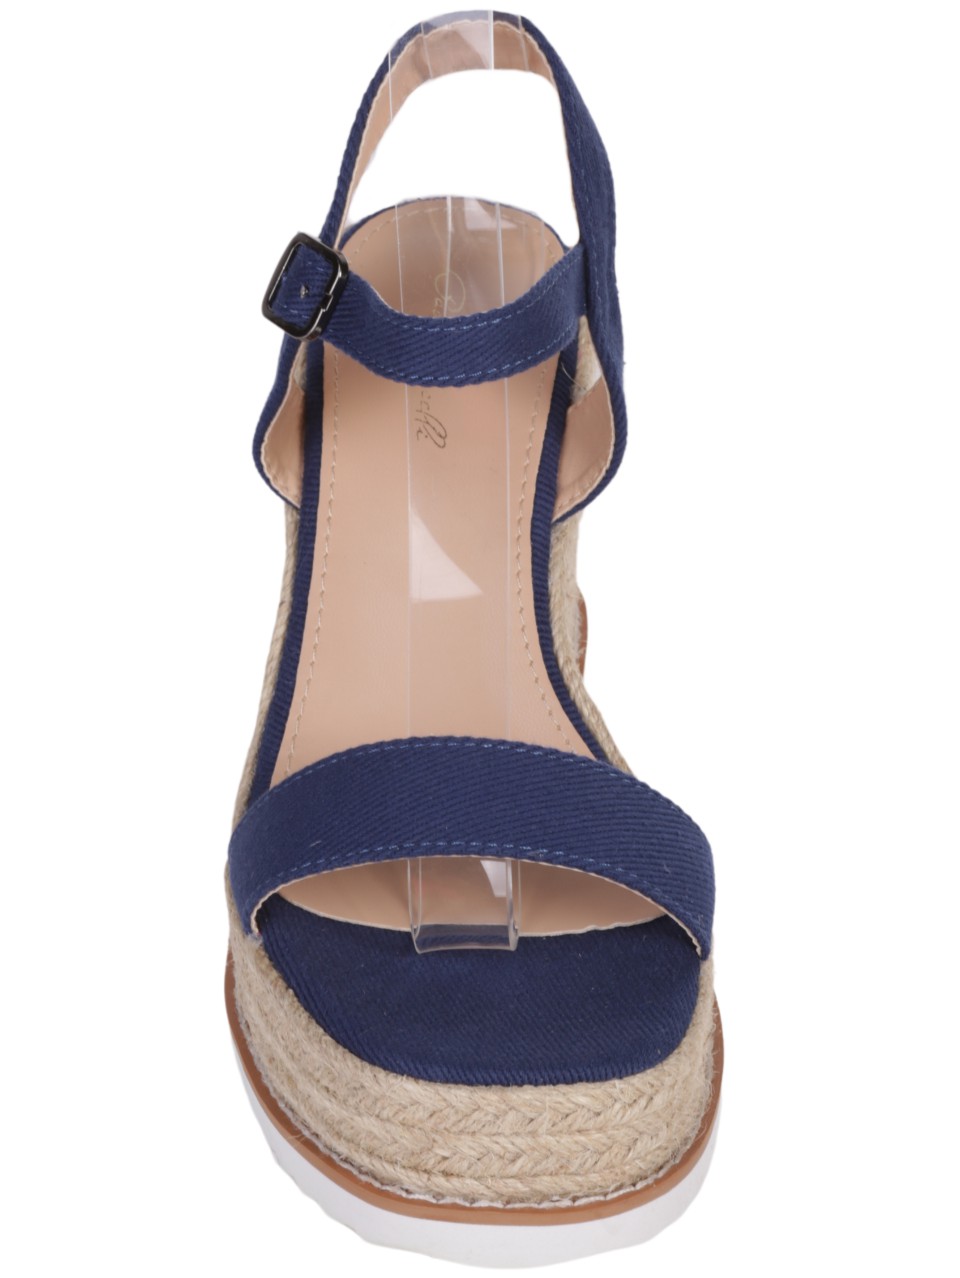 Ежедневни дамски сандали на платформа в синьо 4H-24201 blue